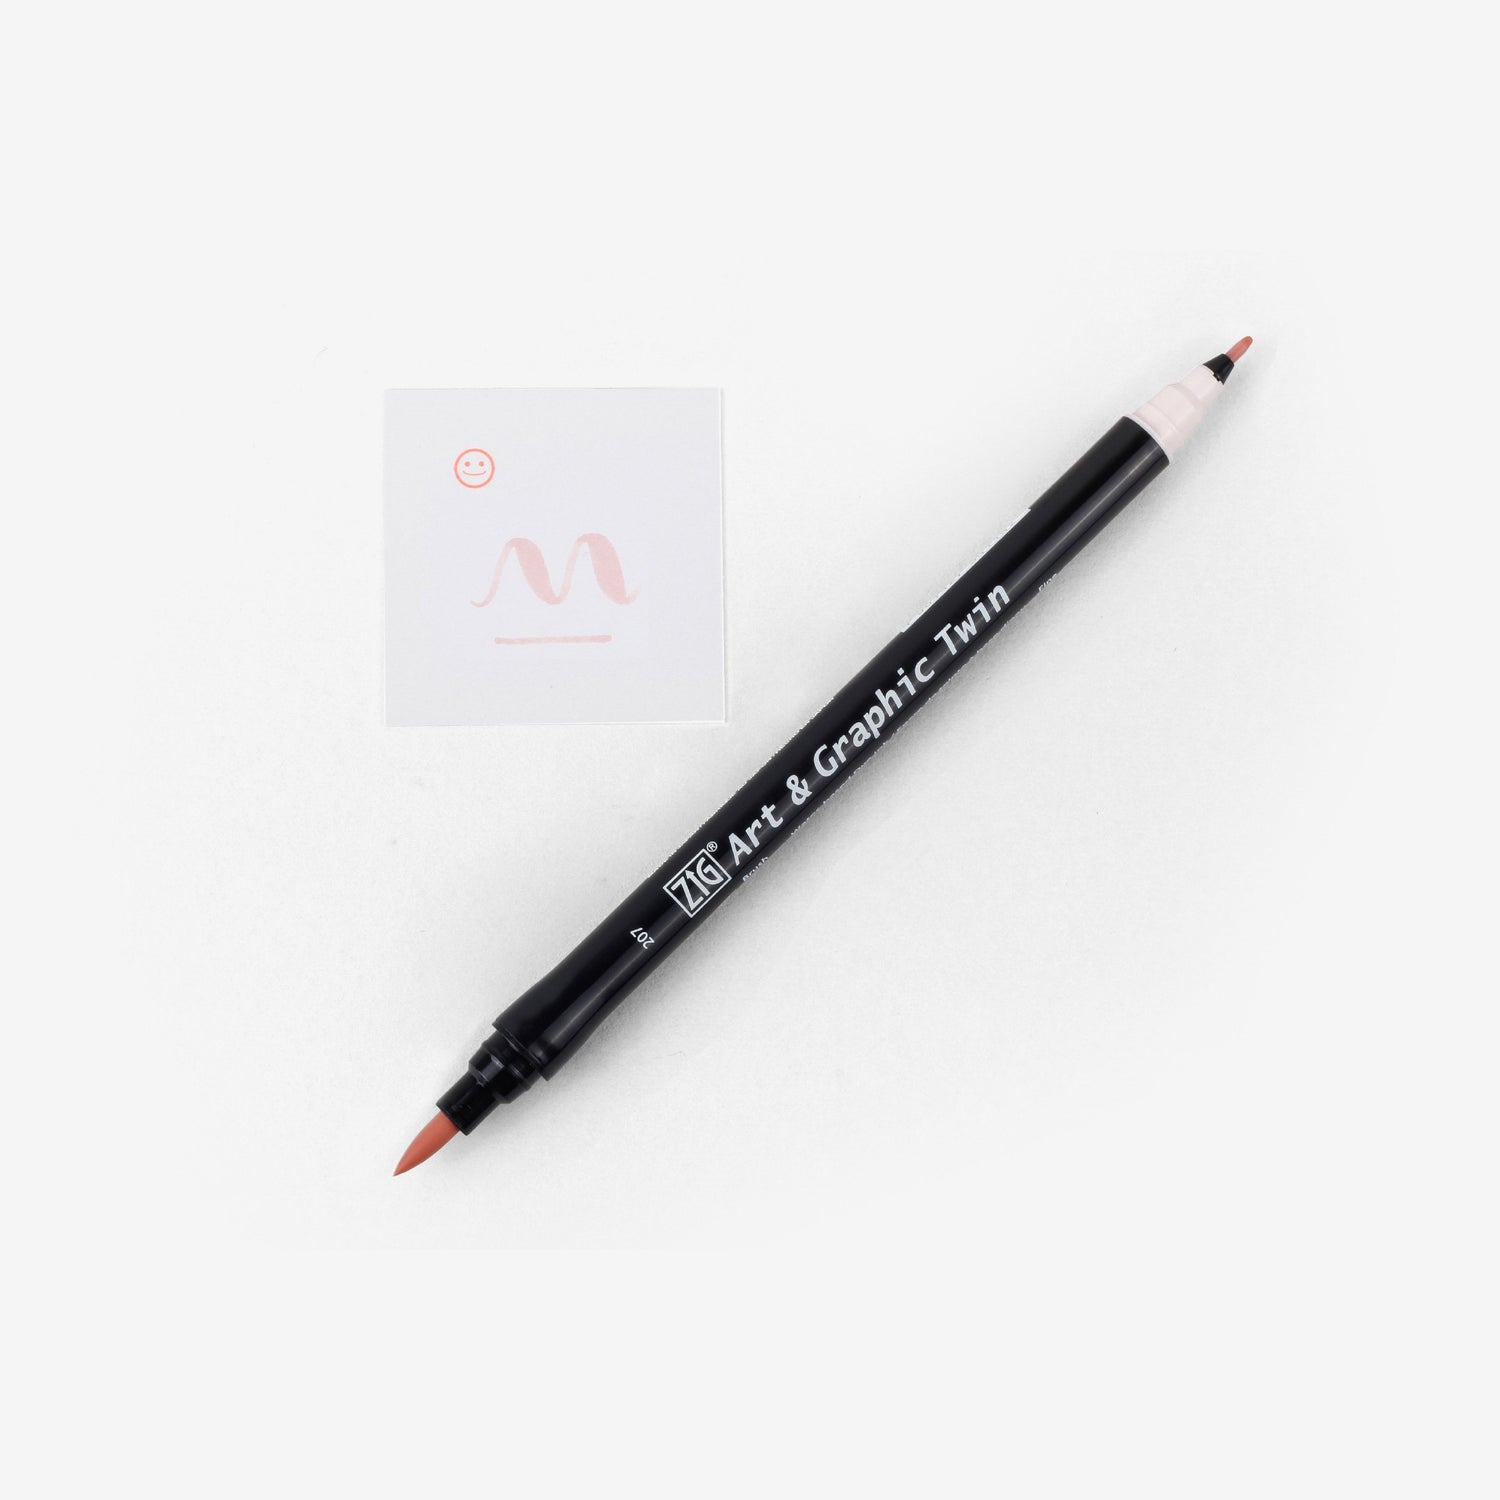 Kuretake Art & Graphic Twin Pen - Pale Pink